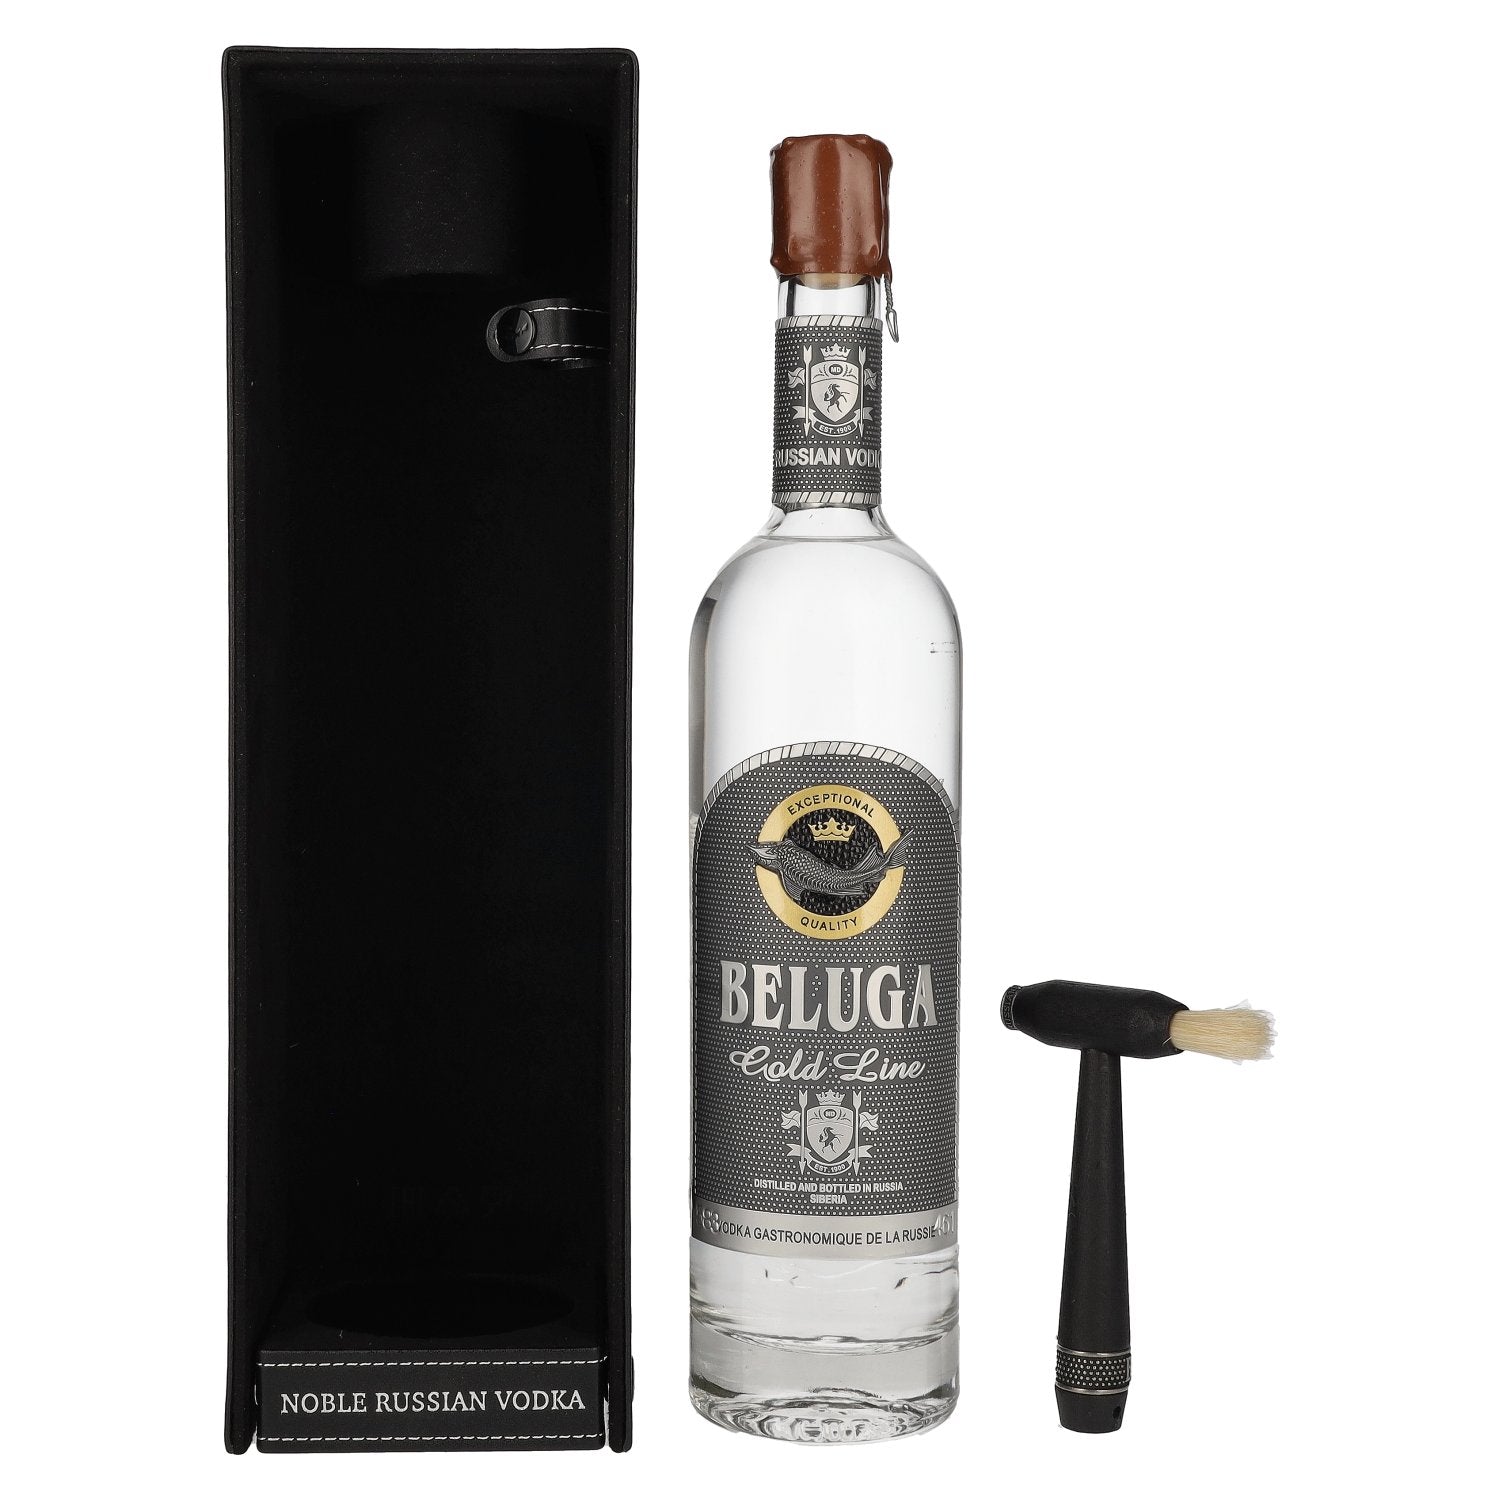 Beluga Gold Line Noble Russian Vodka 40% Vol. 0,7l in Giftbox in Lederoptik with Pinsel